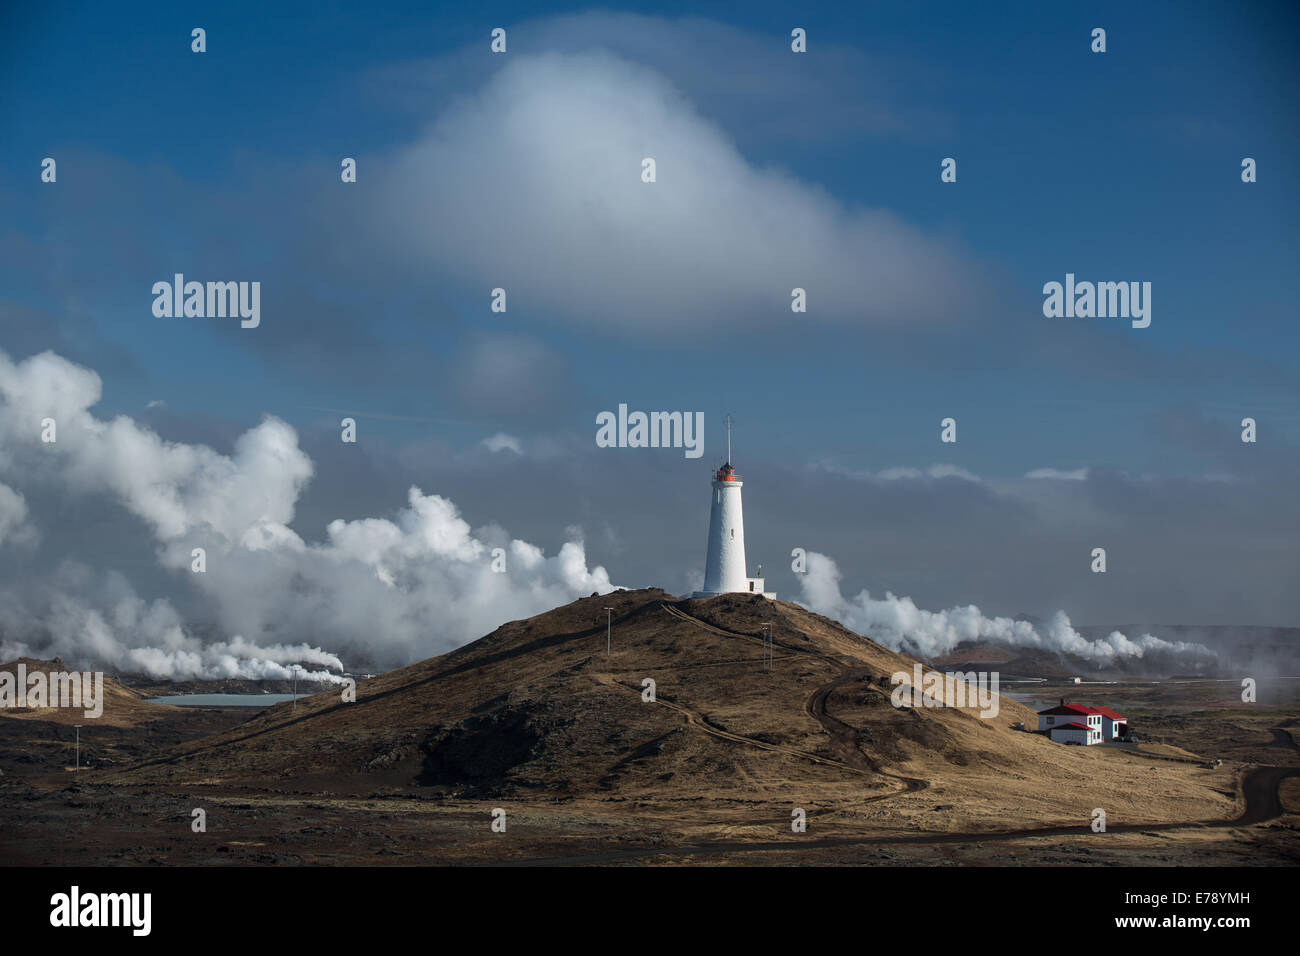 El vapor de la central eléctrica geotérmica y el faro en la península de Reykjanes, Islandia Foto de stock